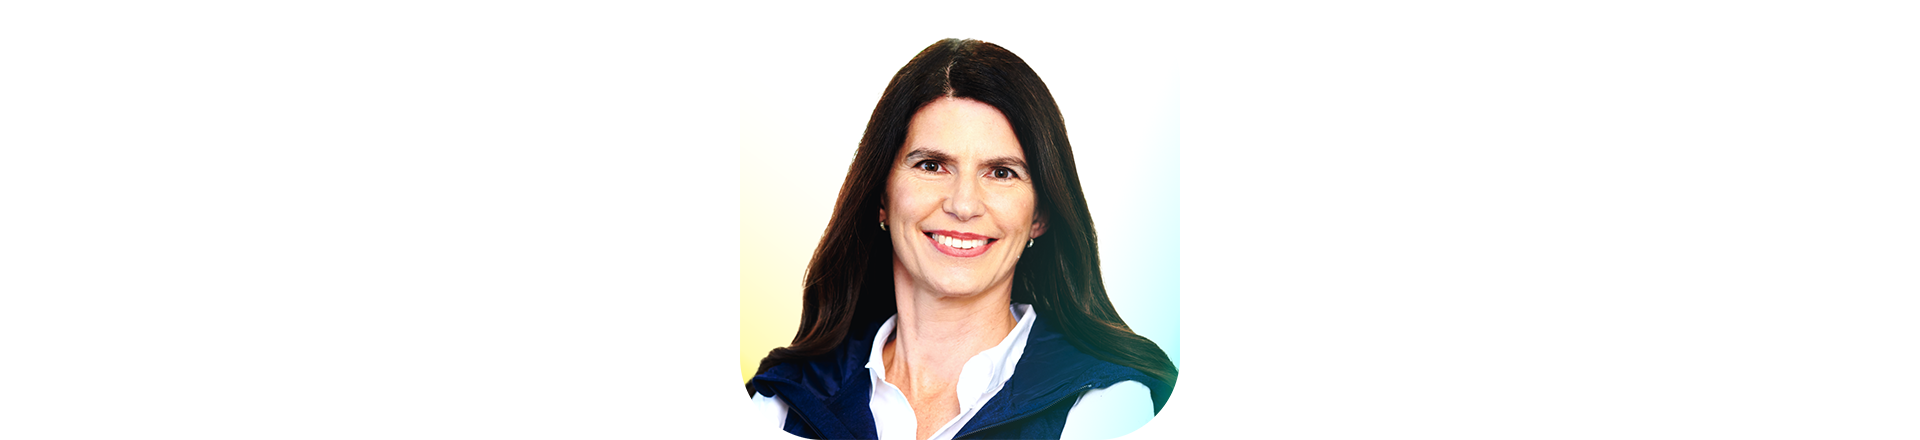 Tara Roth, vicepresidenta ejecutiva, ingeniería de éxito del cliente de Microsoft 365